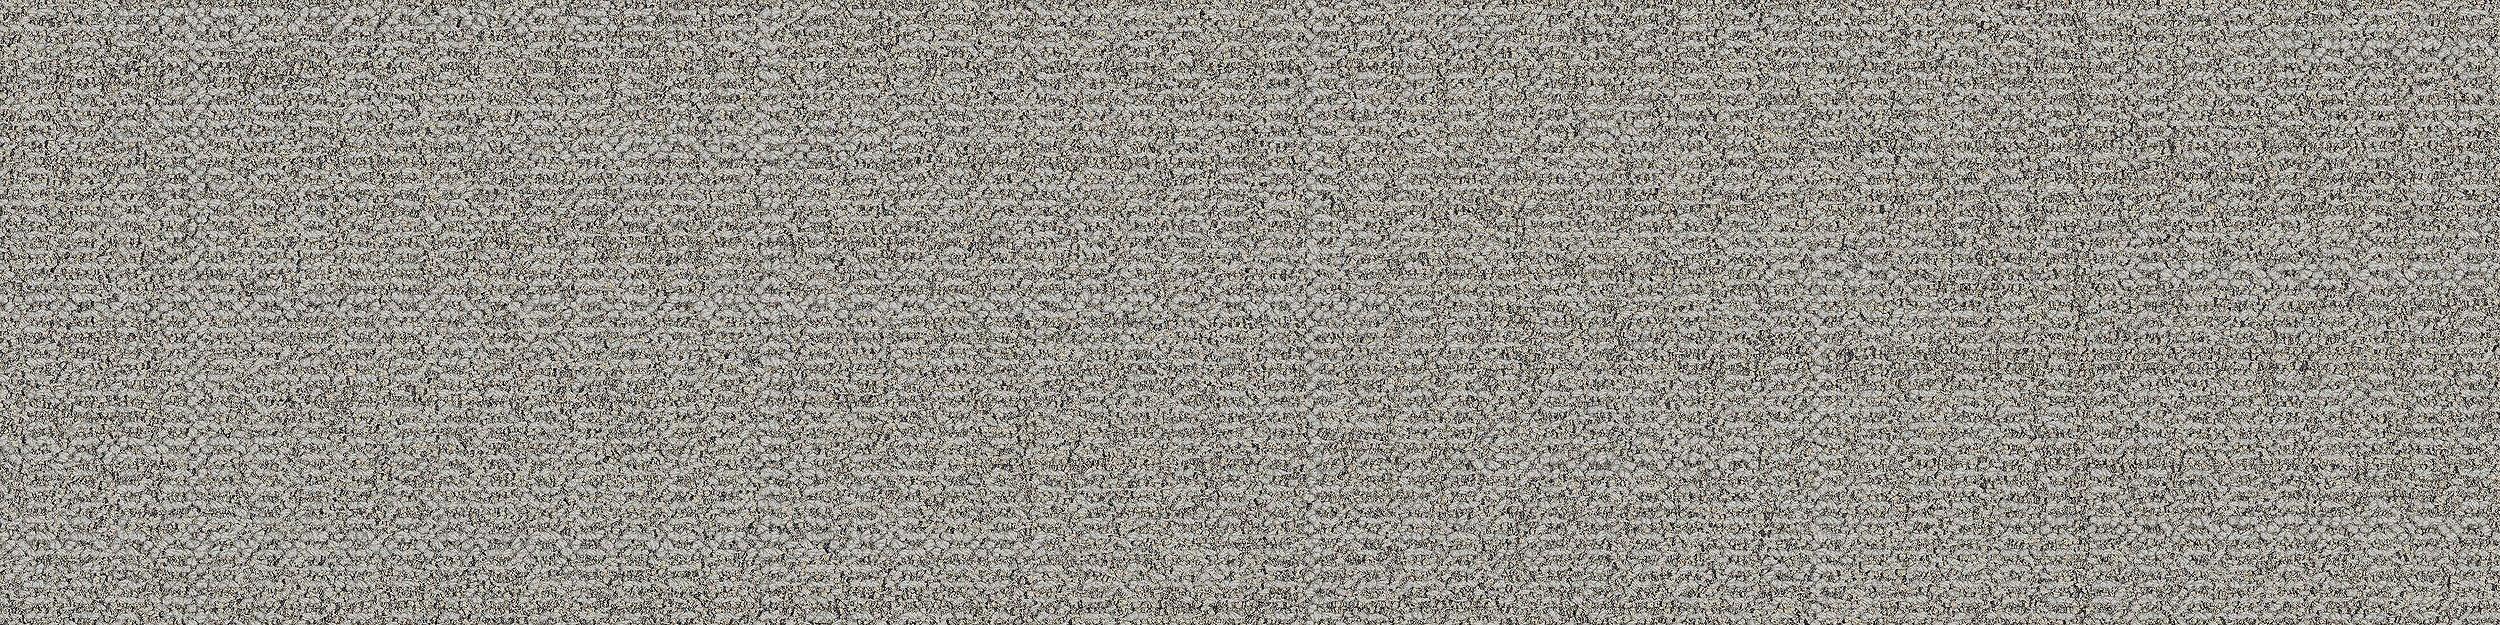 Open Air 401 Carpet Tile In Linen Bildnummer 6